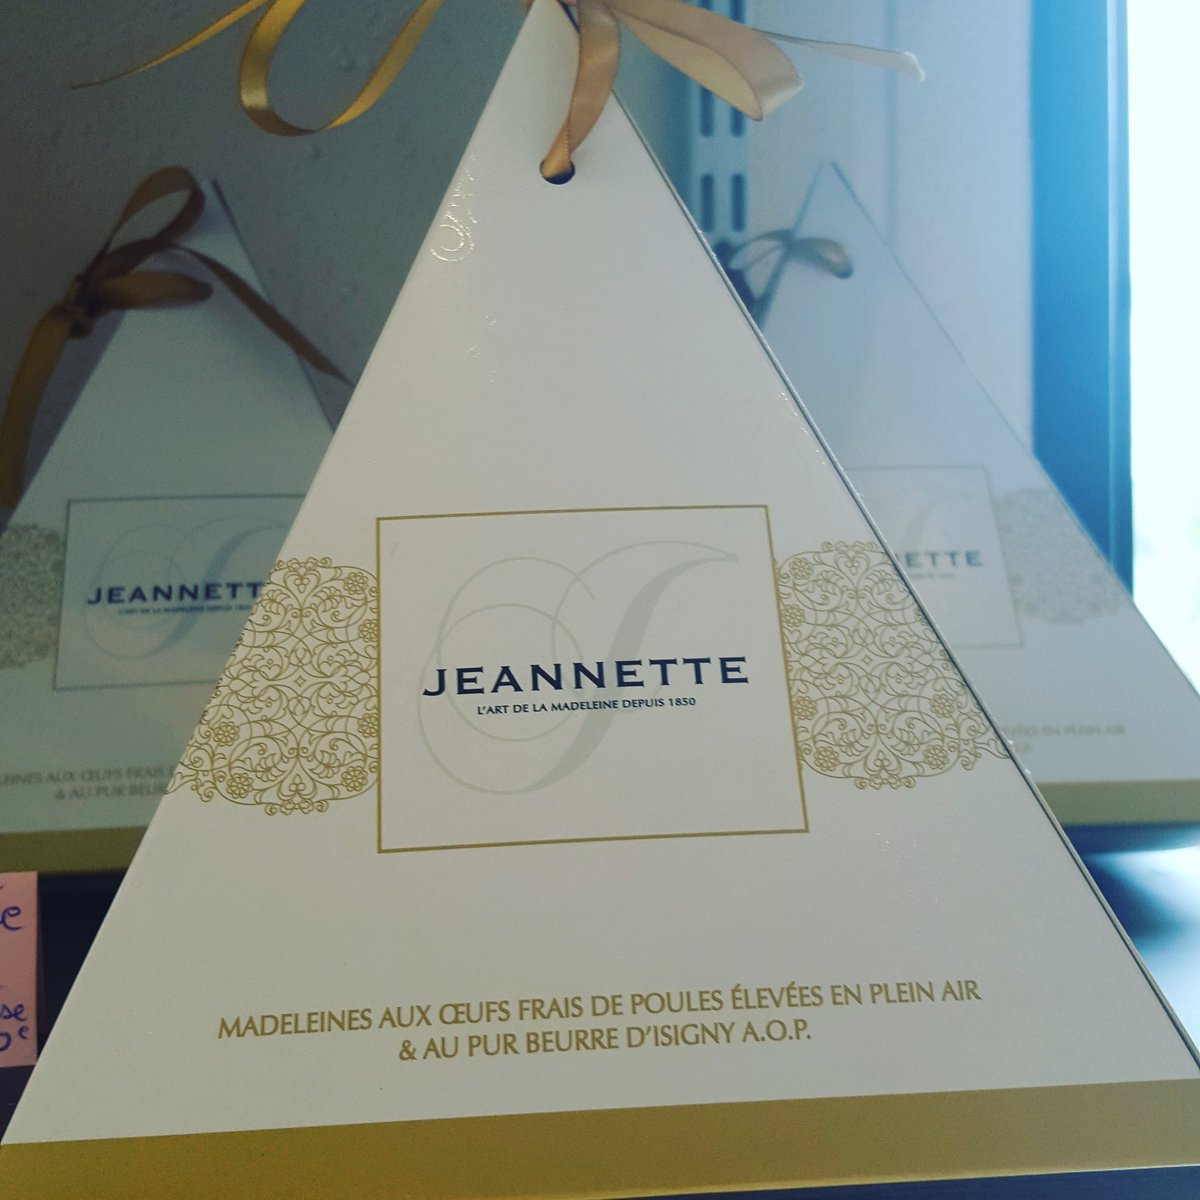 Les madeleines Jeannette sont disponible dans notre boutique.. 
❤❤❤
#madeleines #jeannette #madeleinesjeannette #gourmandisedujour #pyramidegourmande #hotelrestaurant #hummm #hotelcrocus